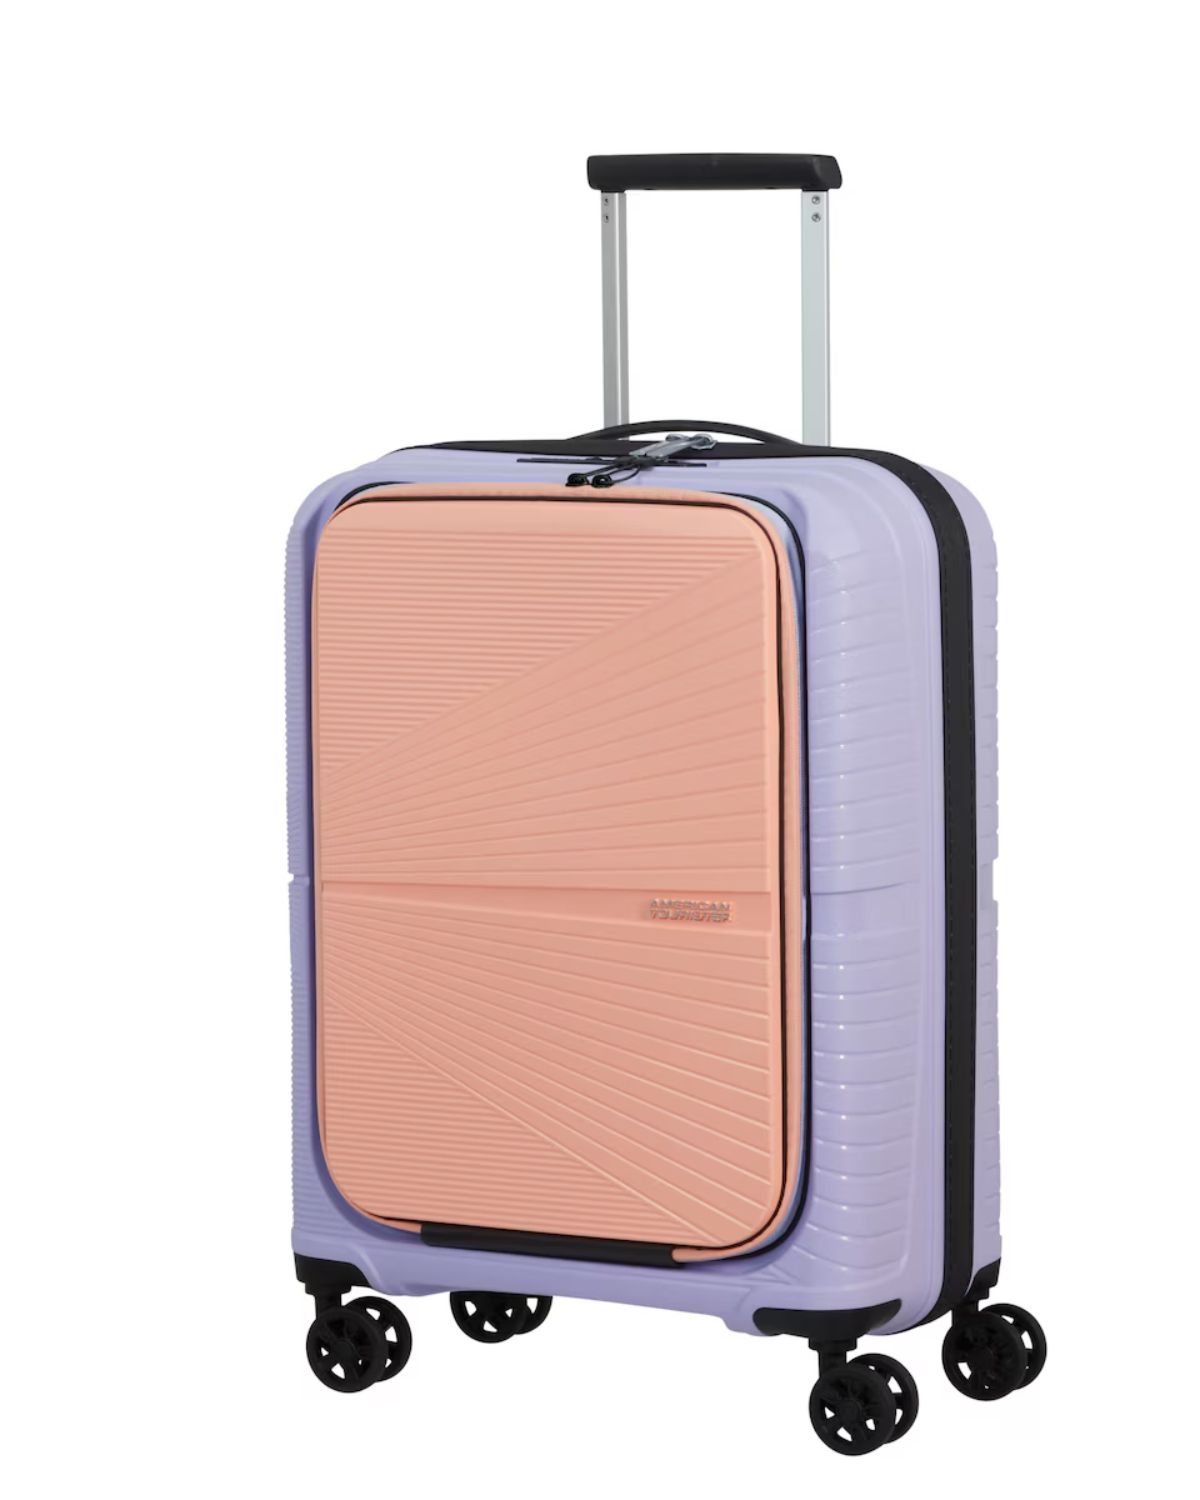 Viaja con estilo gracias a esta maleta de American Tourister.